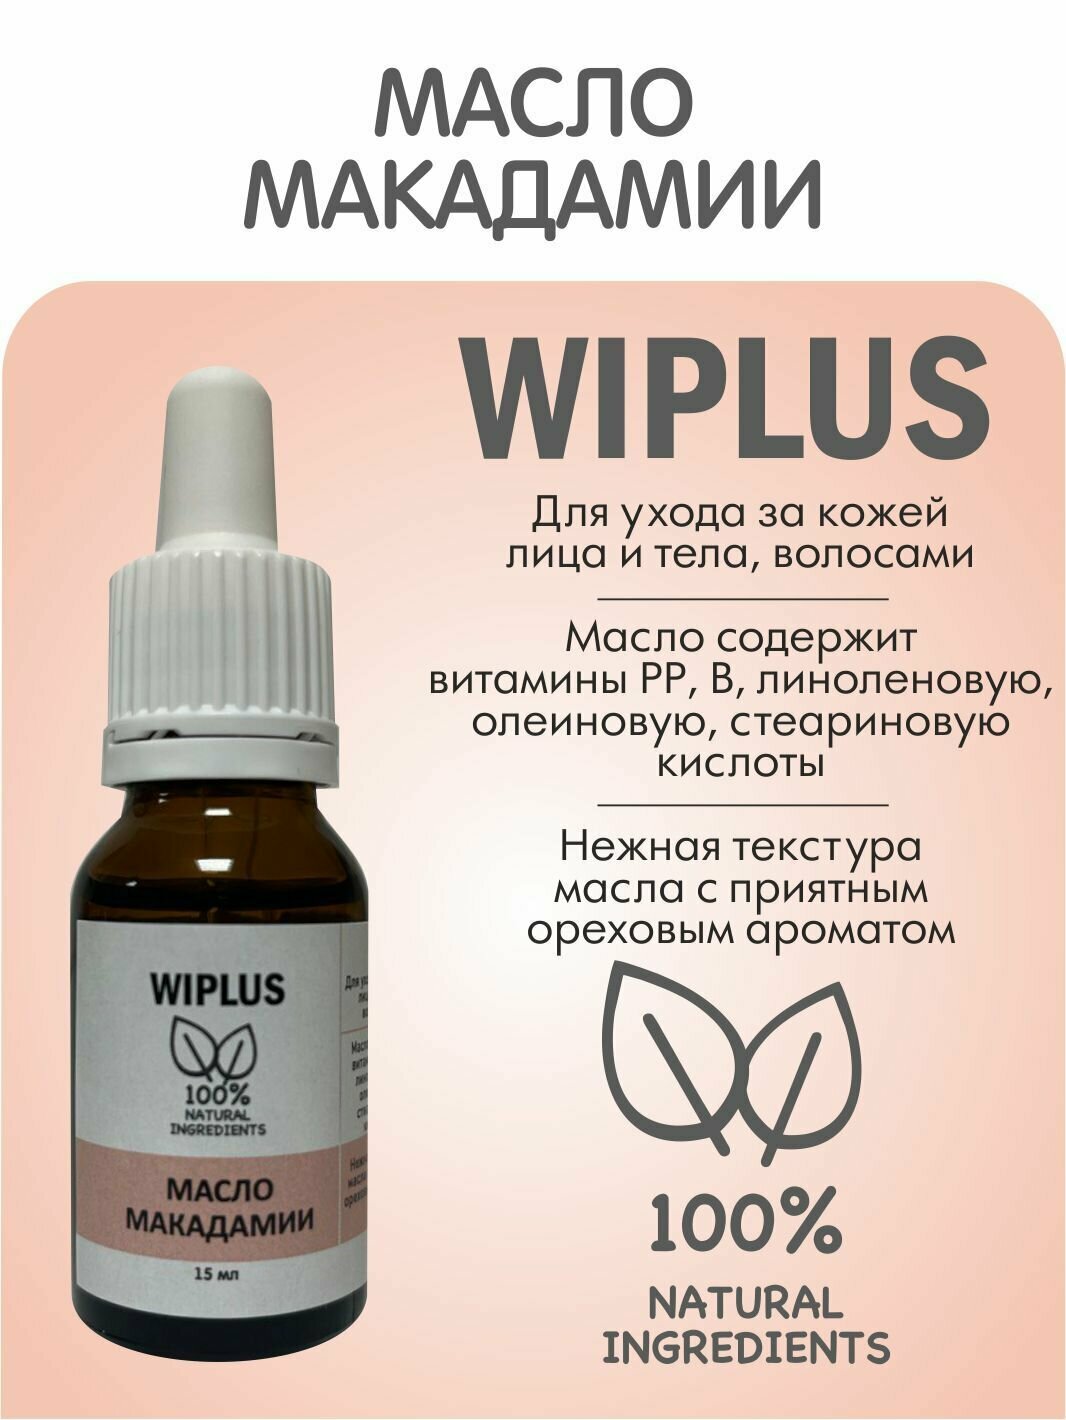 Макадамии масло рафинированное 15 мл (Италия) WIPLUS